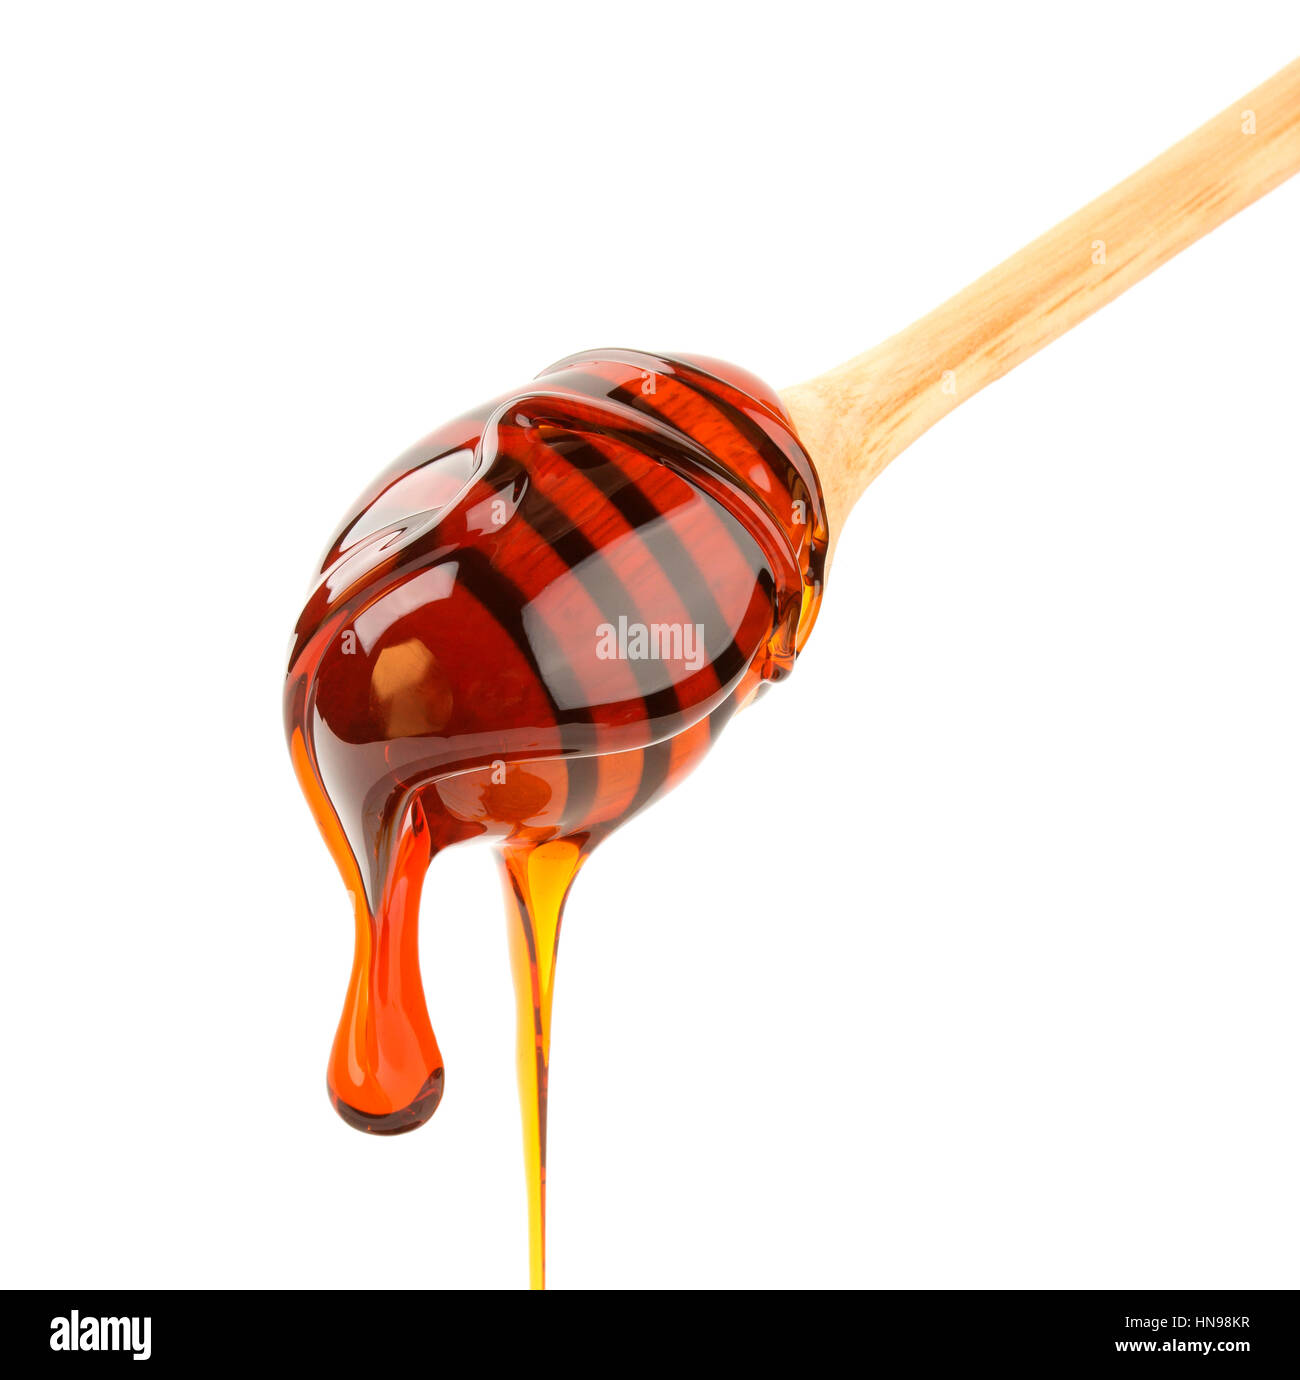 Honey stick isolated on white Stock Photo